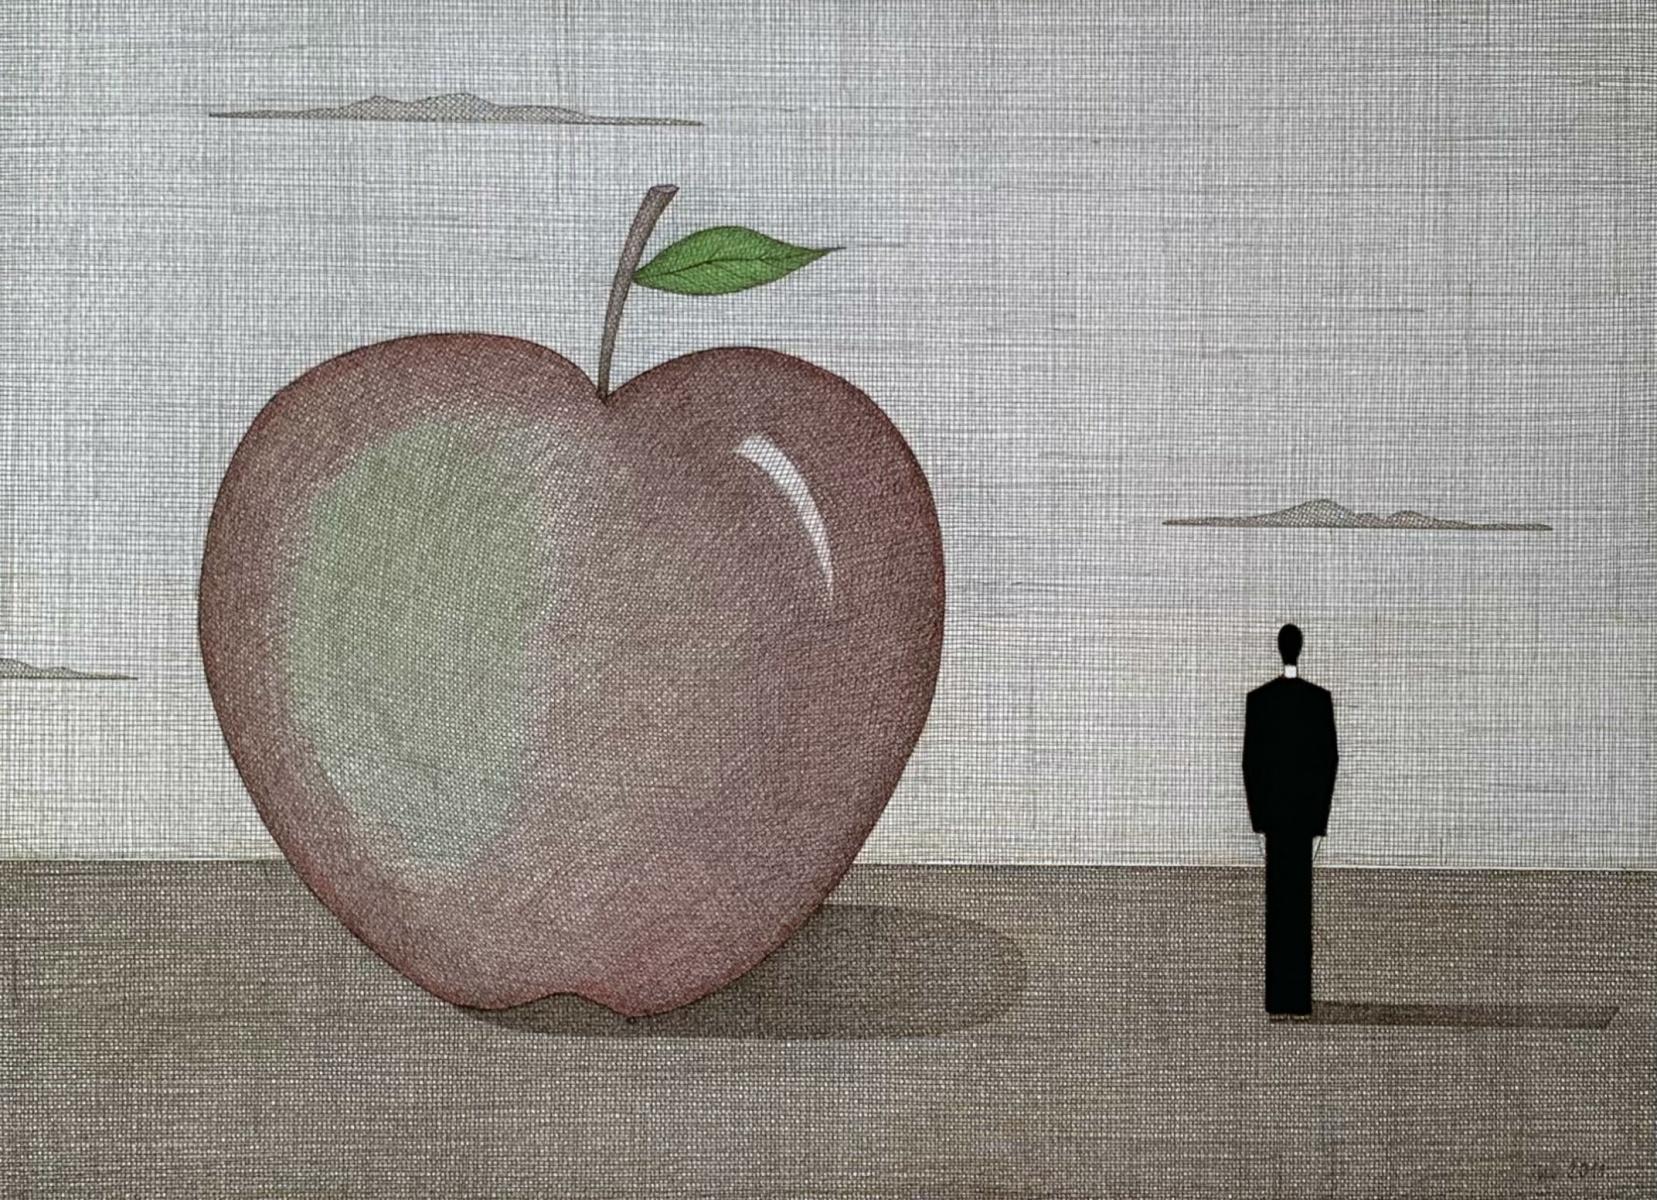 Landschaft mit einem roten Apfel – figürlicher Druck, Surrealismus, Minimalismus